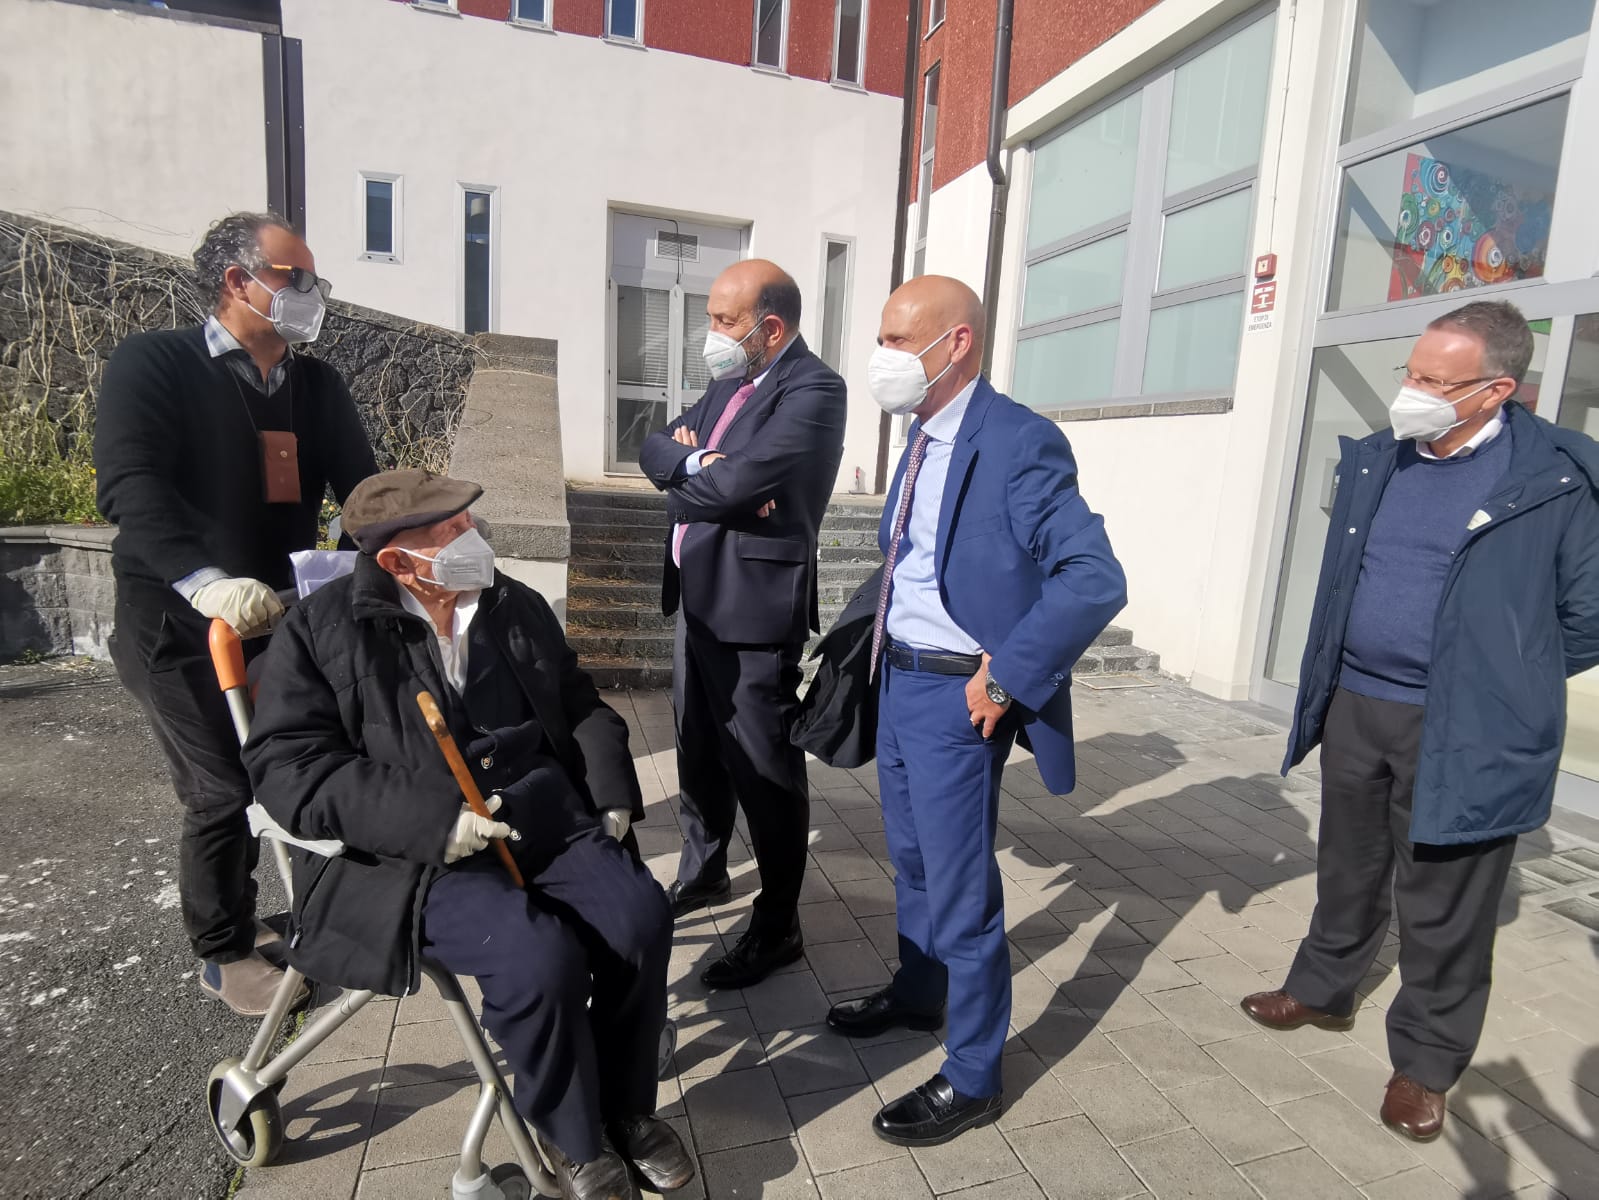 Coronavirus, al Policlinico di Catania vaccinato il più anziano tra i siciliani: ha 105 anni e una vita da raccontare